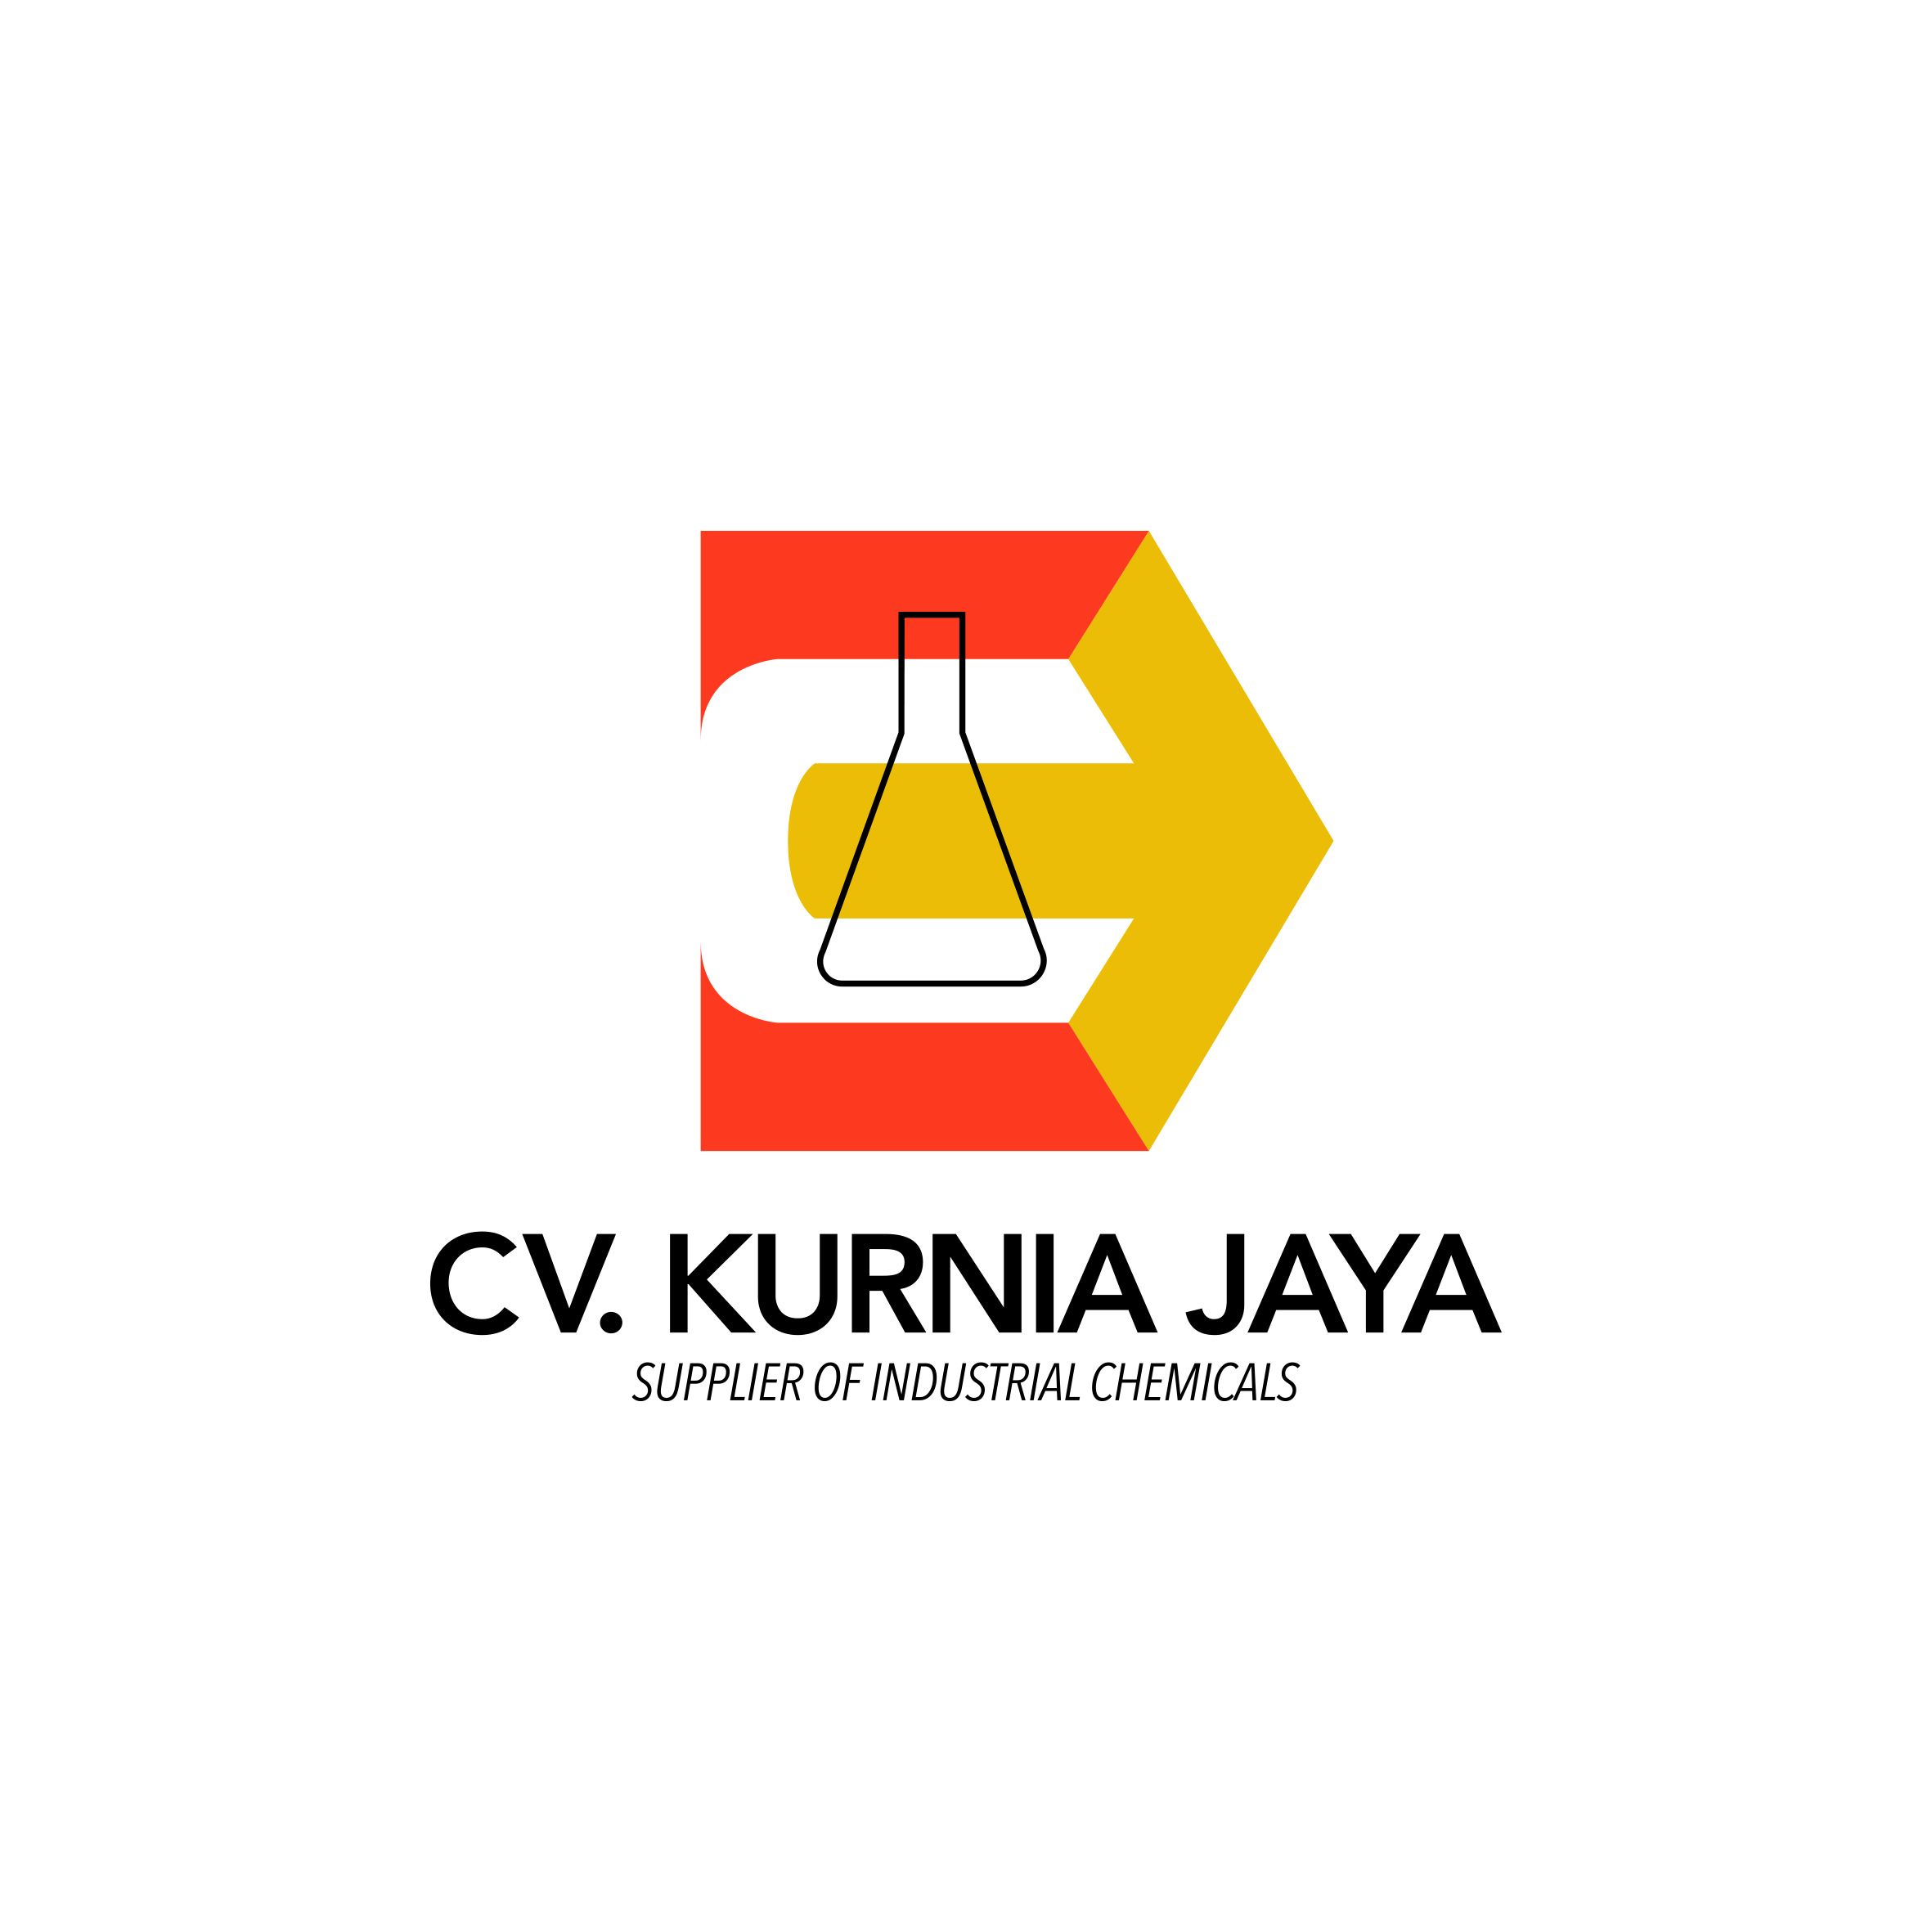 Cv. Kurnia Jaya